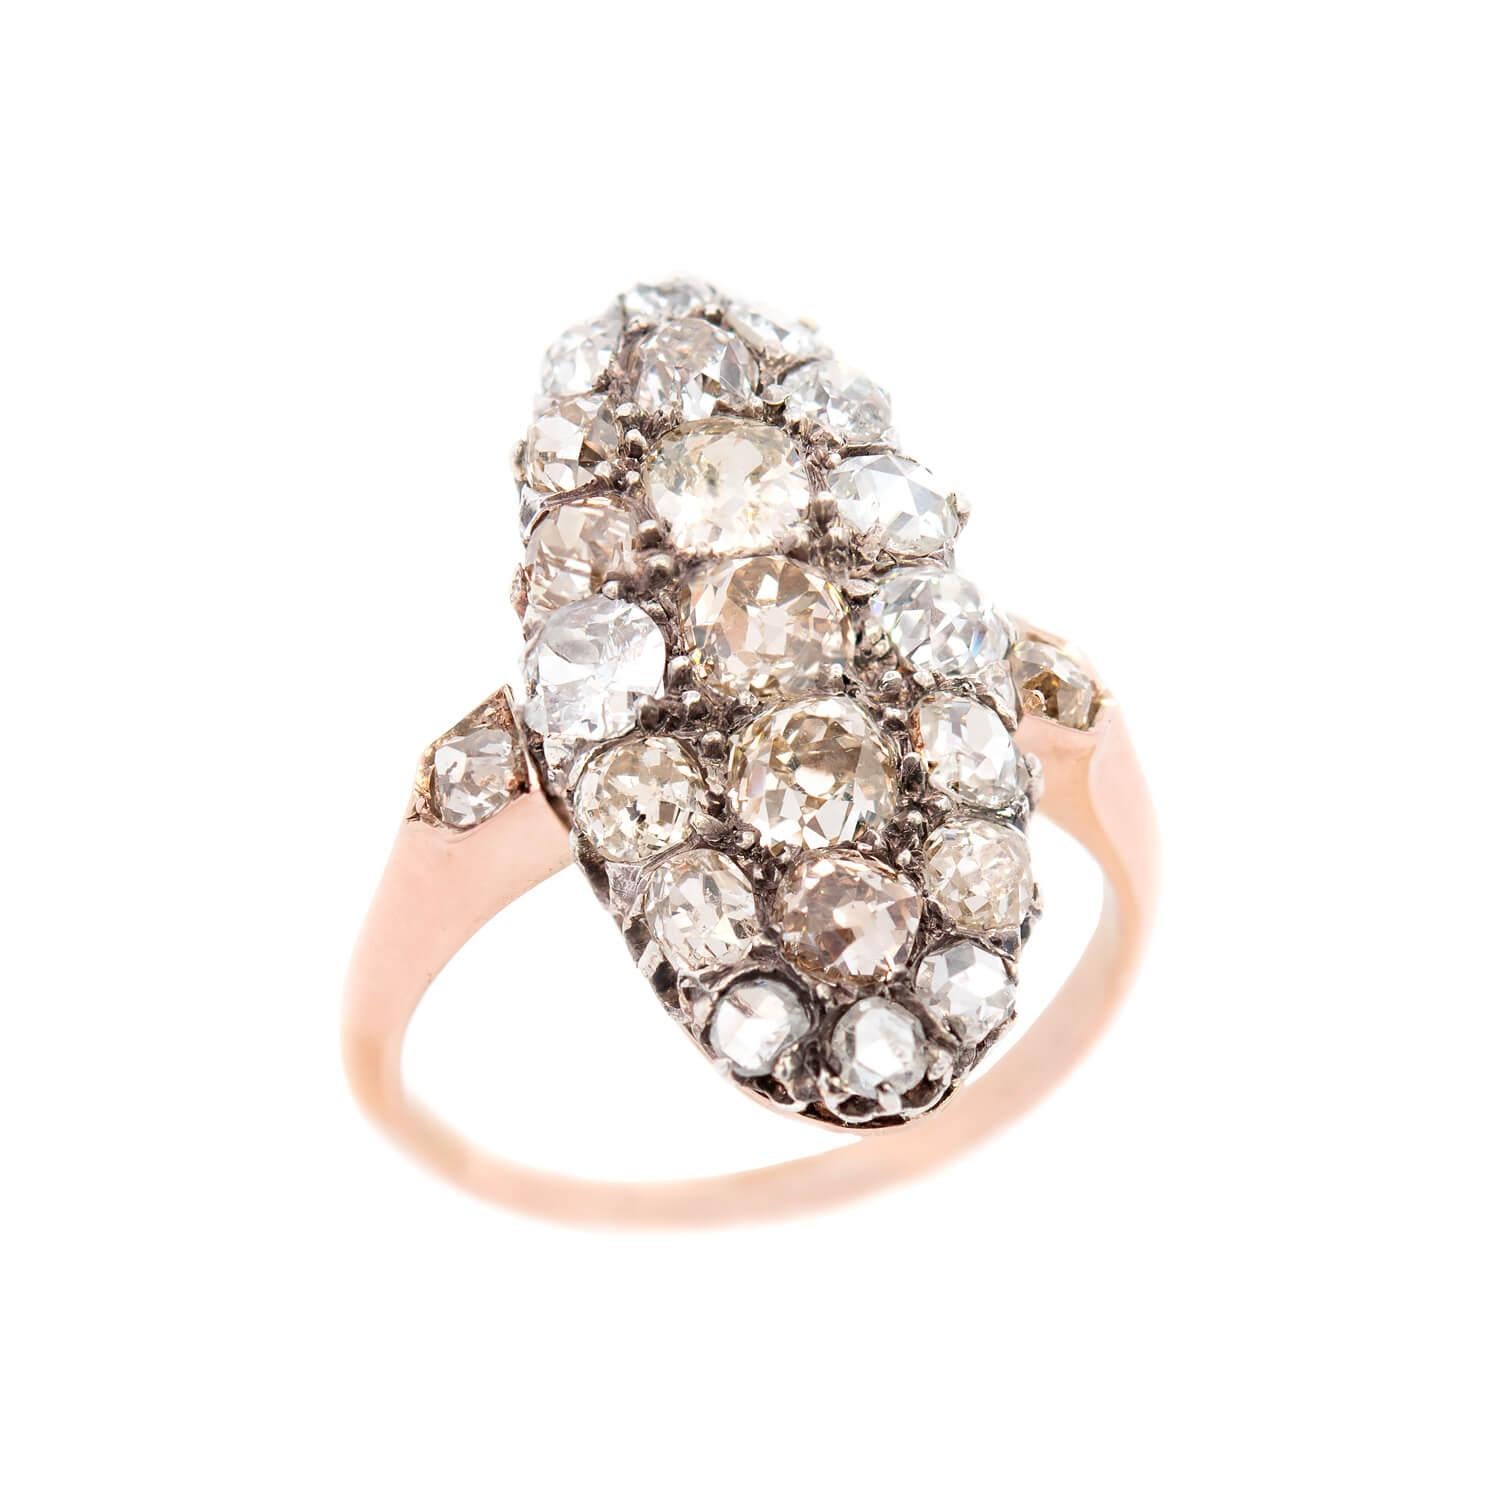 Ein wunderschöner Ring aus der Edwardianischen Ära (1900)! Der aus 18 Karat und Platin gefertigte Ring ist mit 23 Diamanten im Old Mine Cut und Rose Cut von insgesamt 2,75 ct geschmückt. Die Mischung aus natürlichen alten Schliffen, die in der Farbe